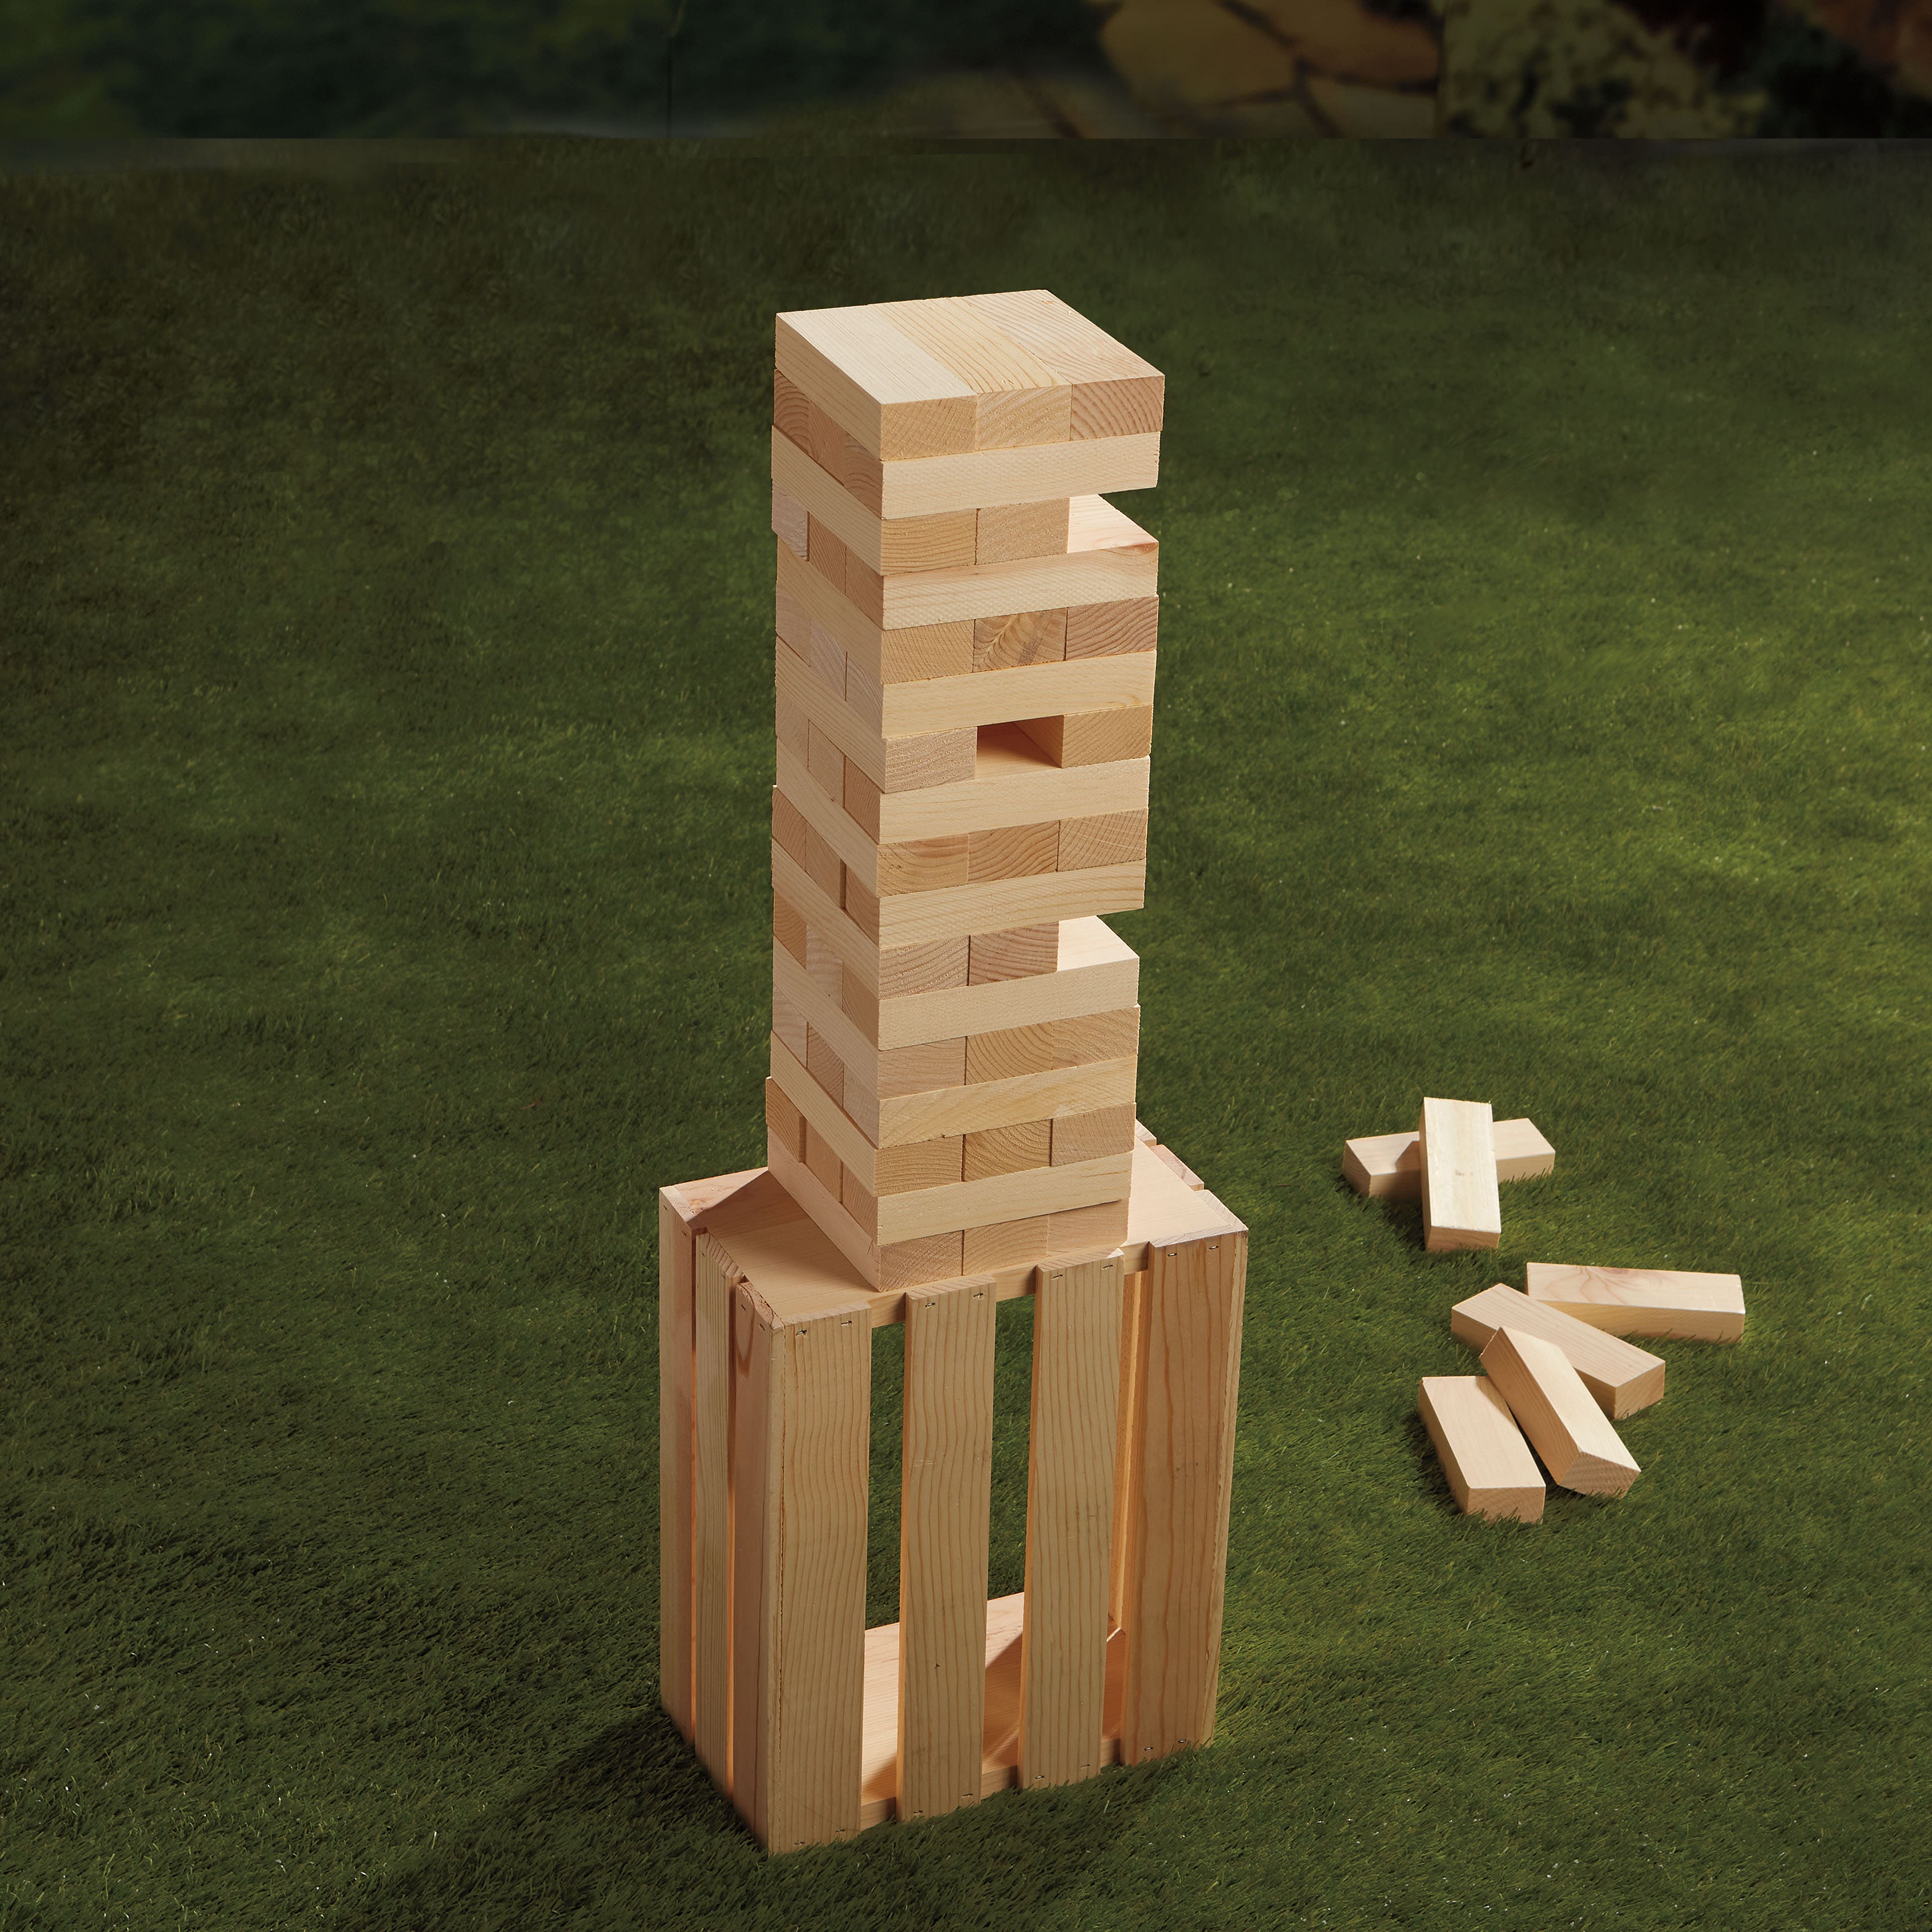 Wood Block Tumbling Tower Set by Make Market&#xAE;